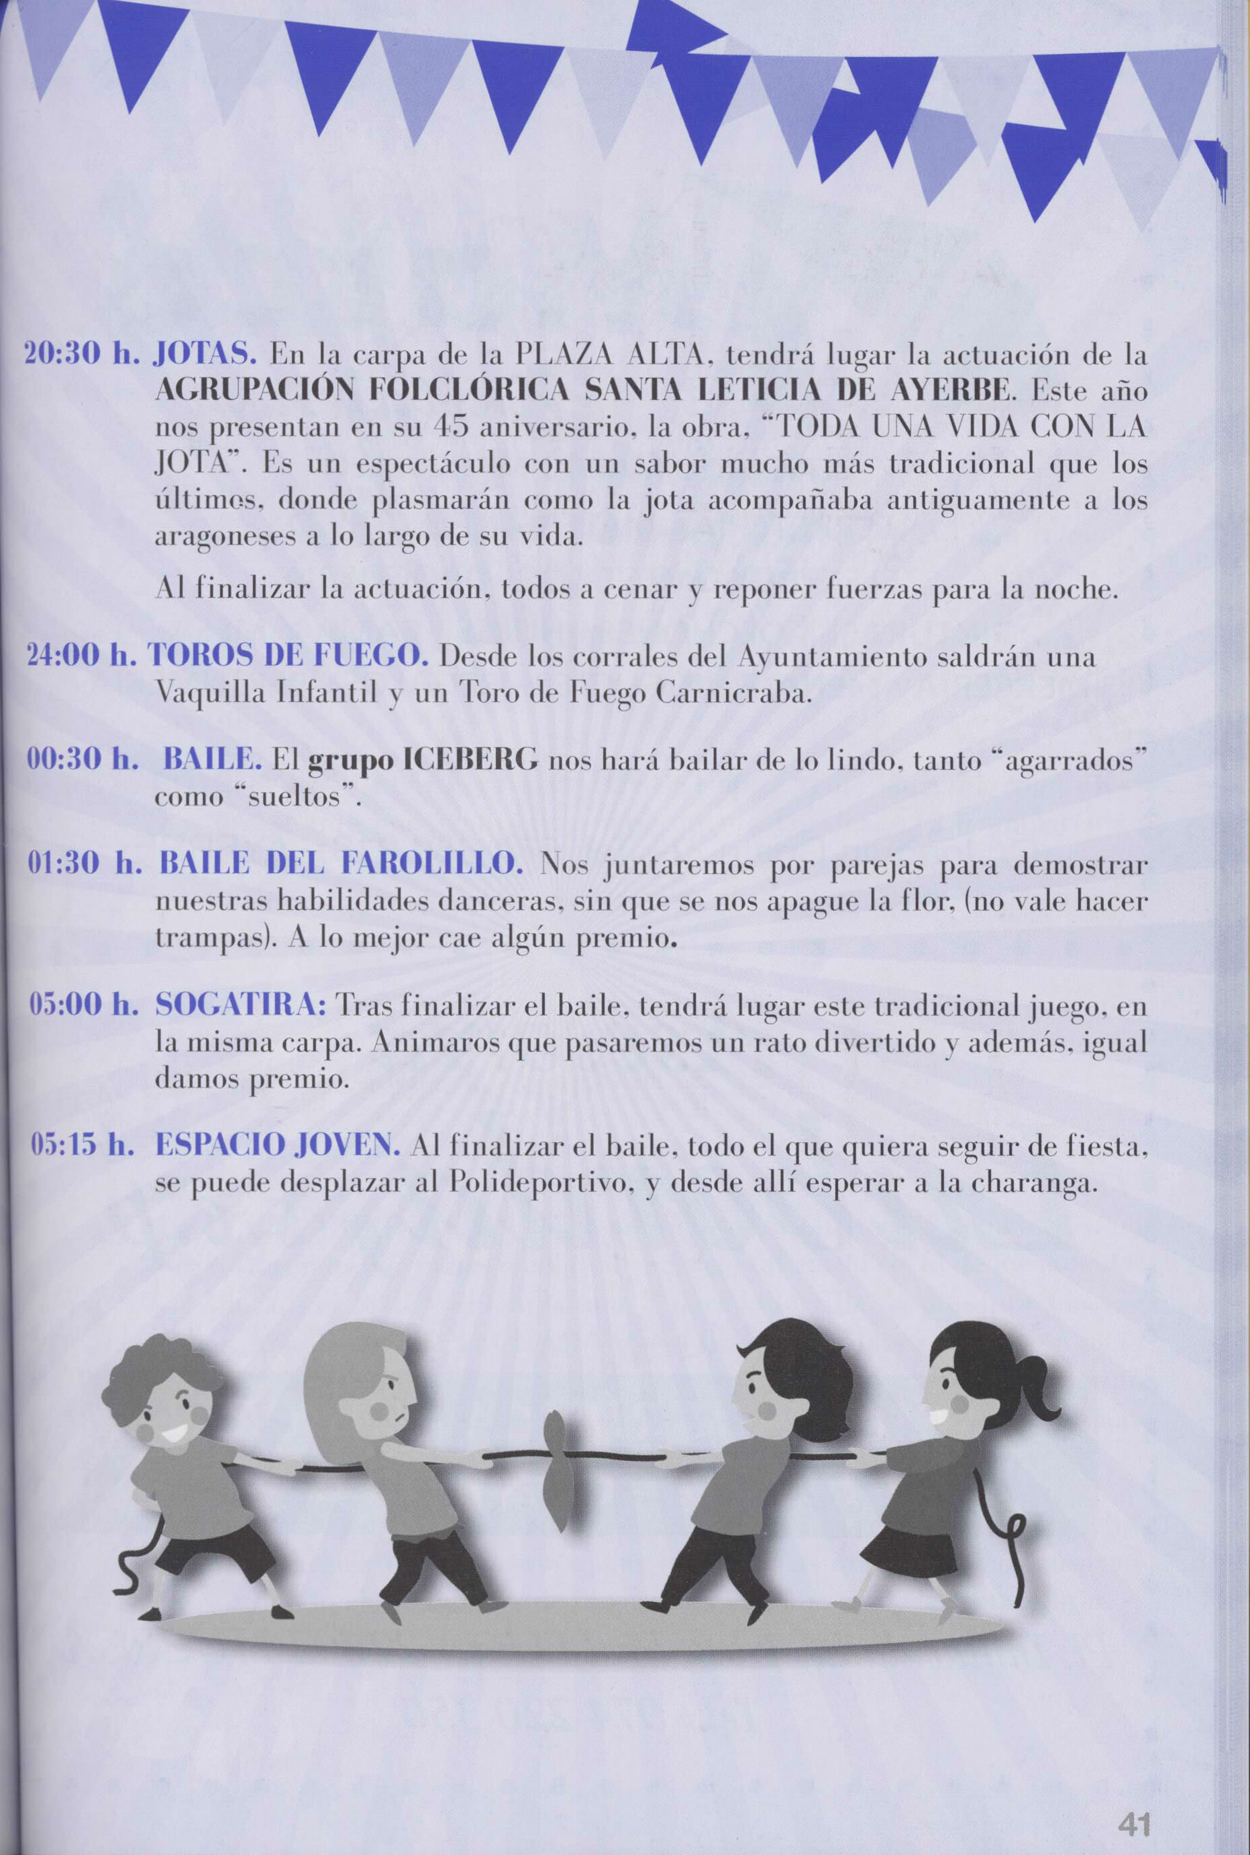 Programa de fiestas de Ayerbe con indicación de la celebración del juego de la sogatira.